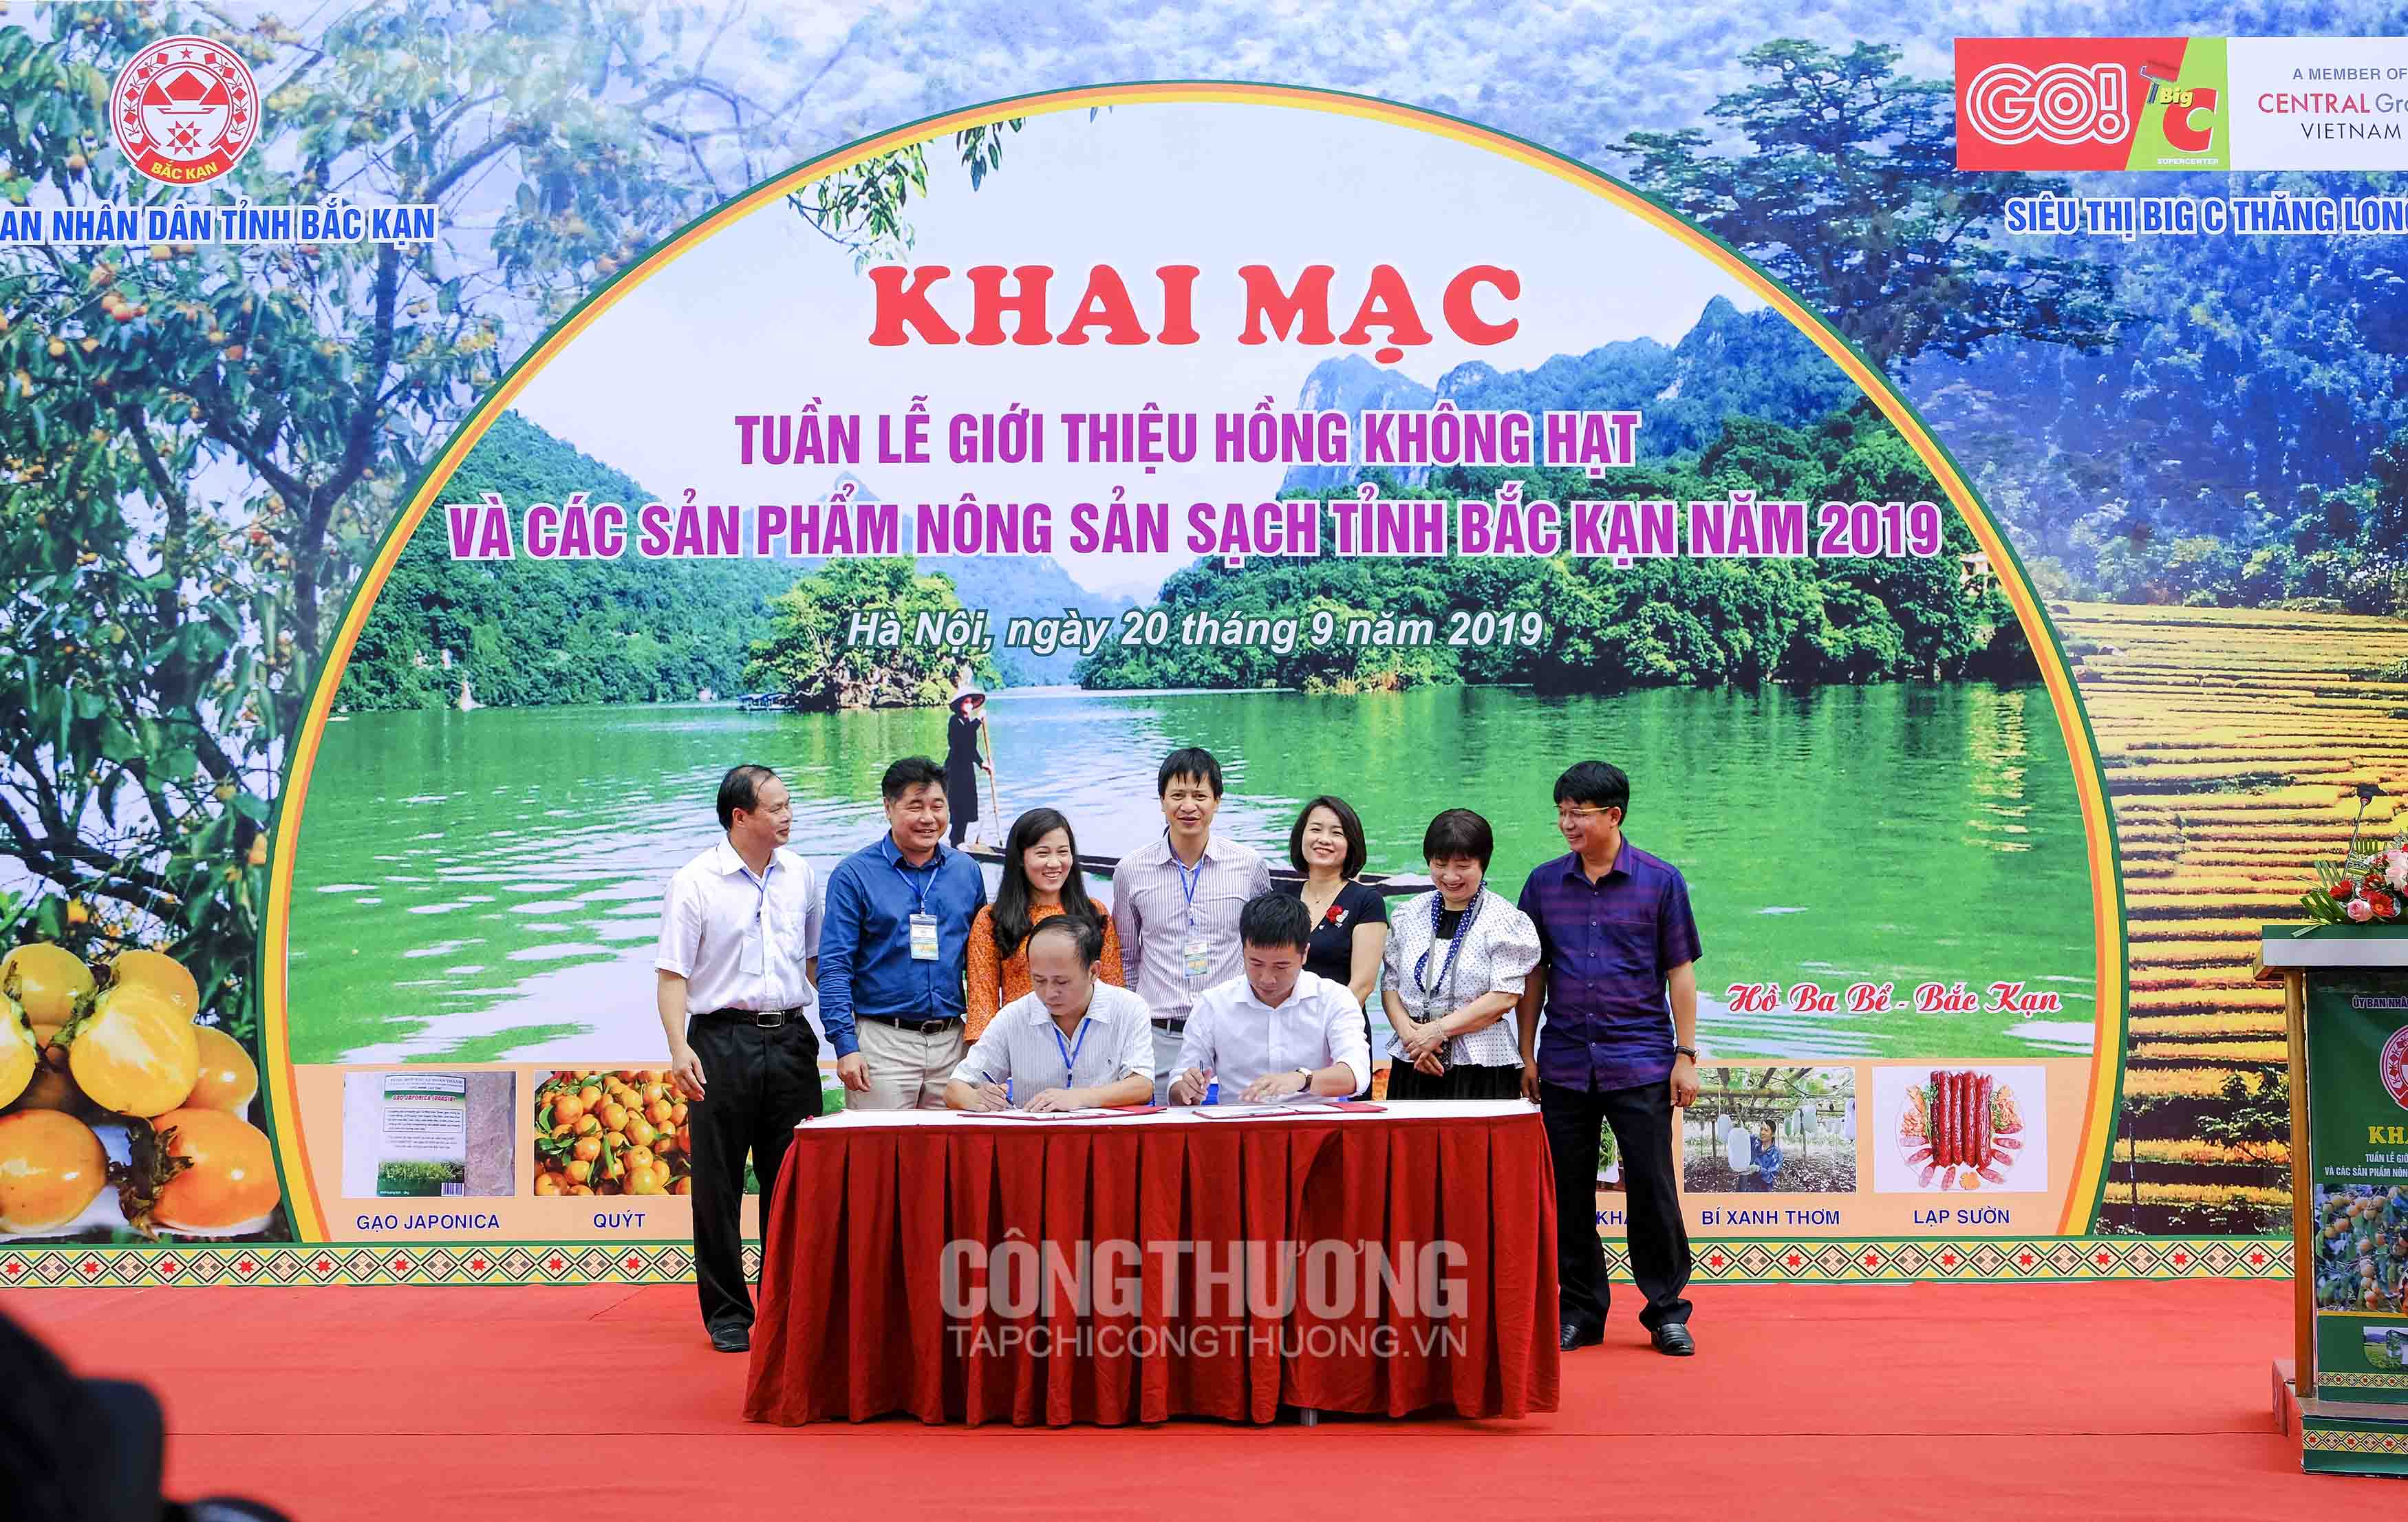 Lễ ký kết Biên bản ghi nhớ hợp tác (MOU) giữa Central Group Việt Nam và Trung tâm khuyến nông tỉnh Bắc Kạn ngày 20/9/2019